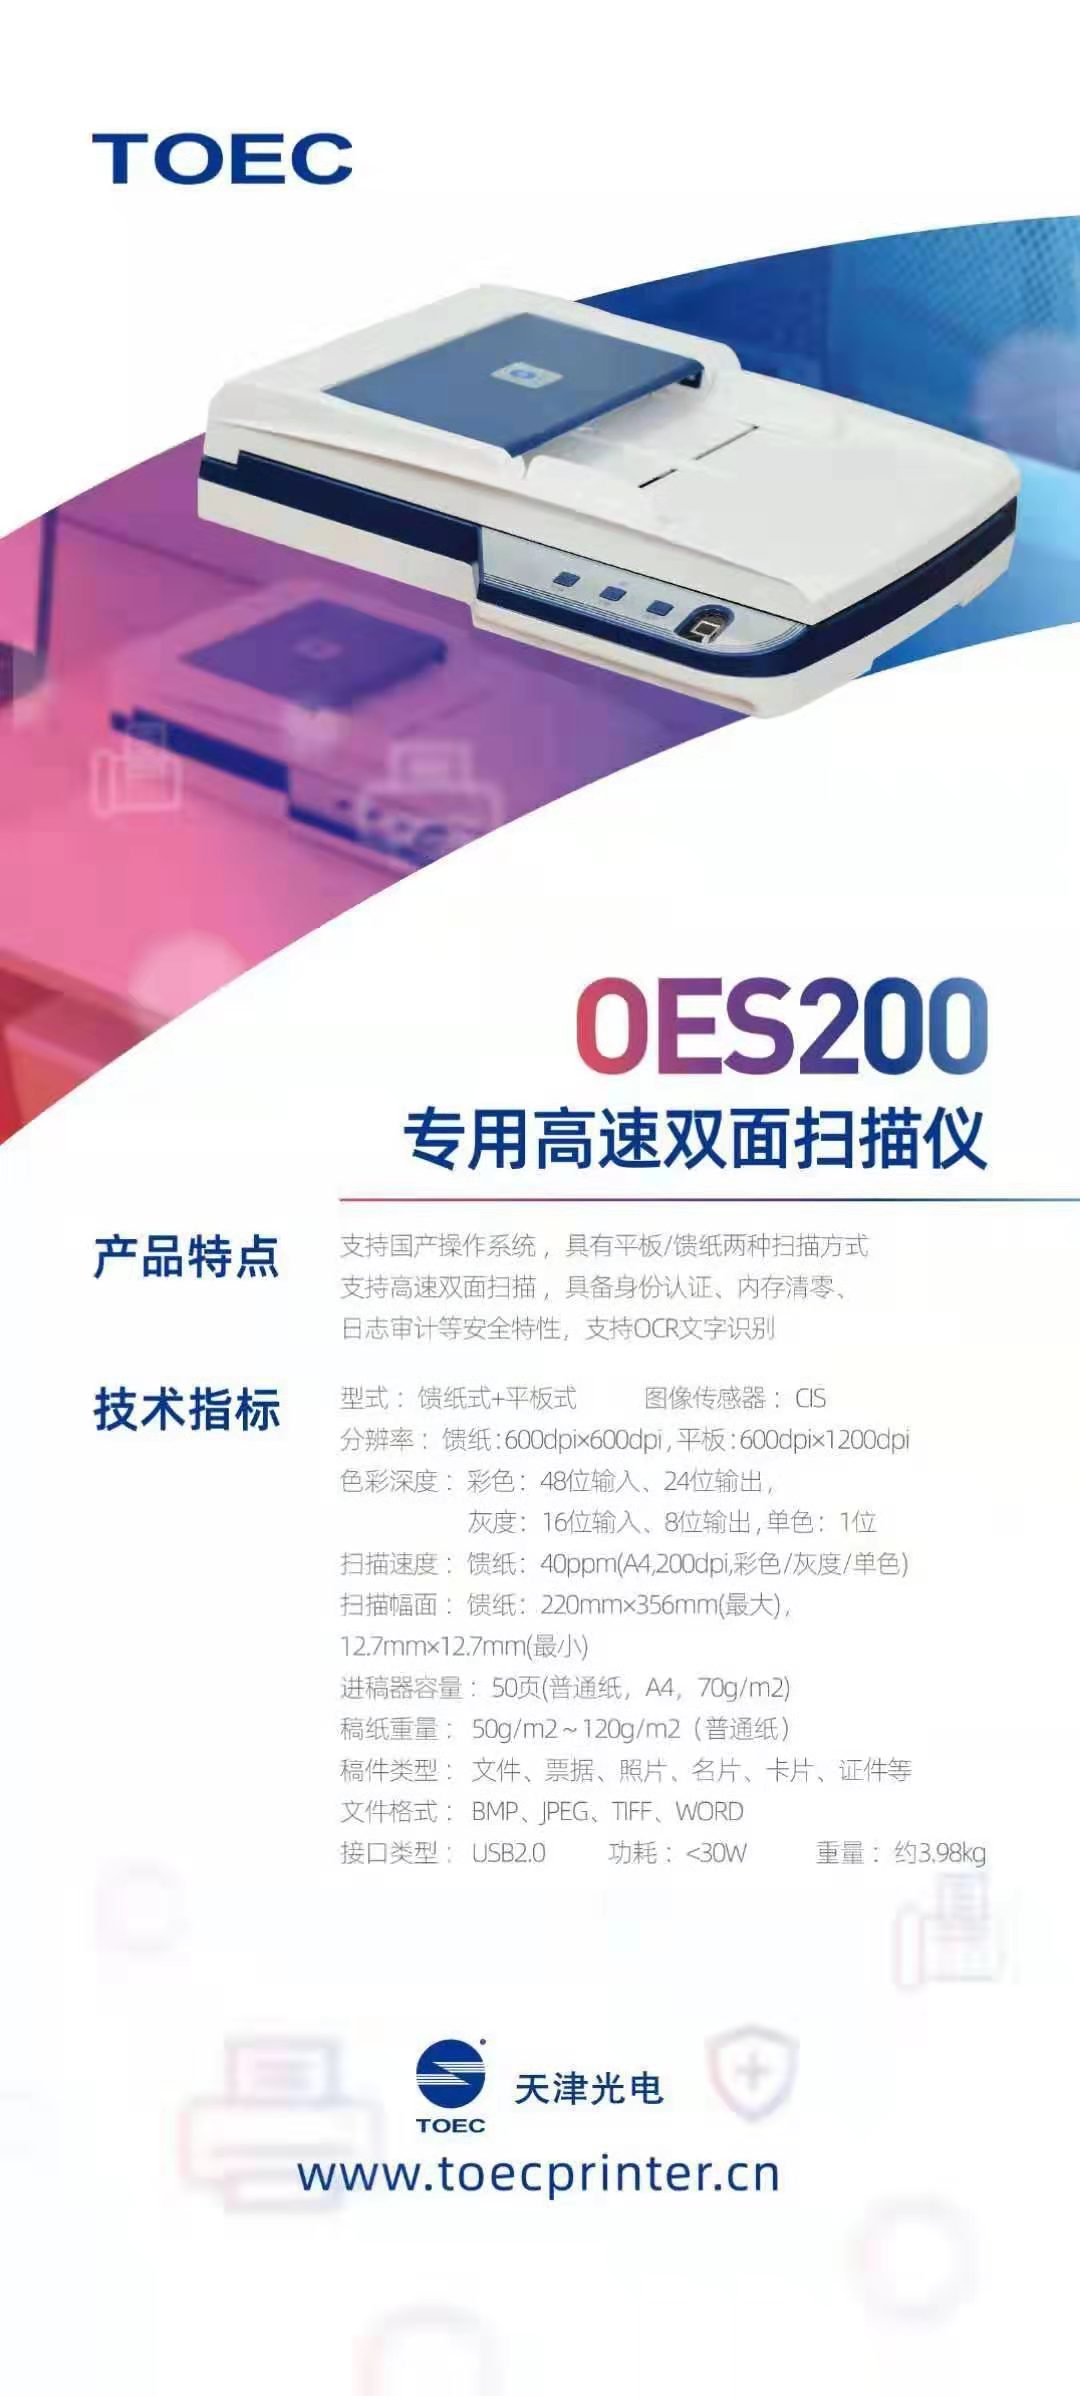 OES200产品介绍.jpg